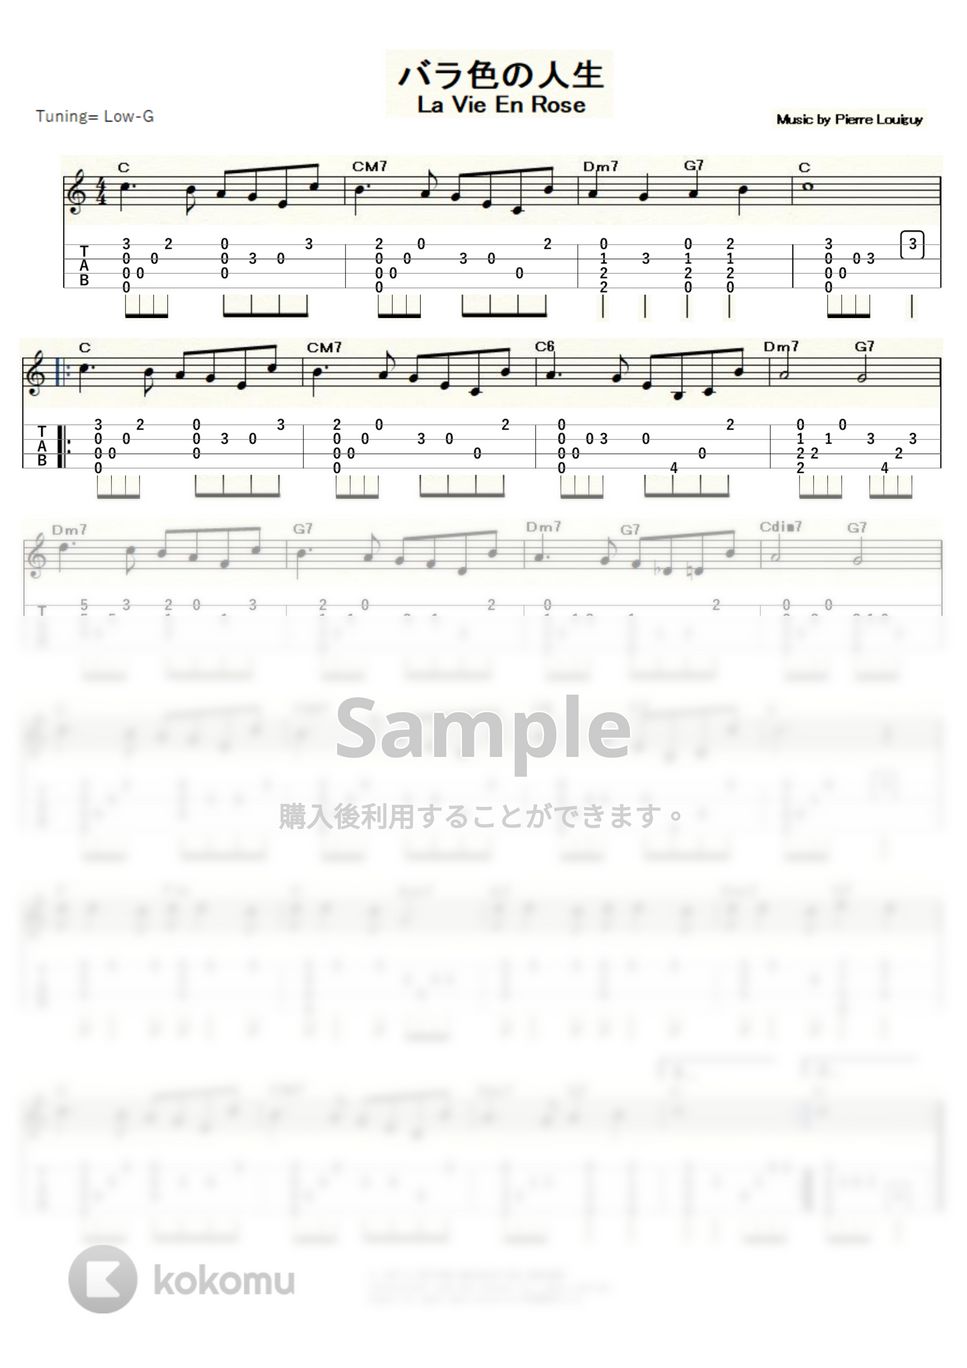 エディット・ピアフ - La Vie en rose（ラ・ヴィ・アン・ローズ） (ｳｸﾚﾚｿﾛ/Low-G/初級～中級) by ukulelepapa